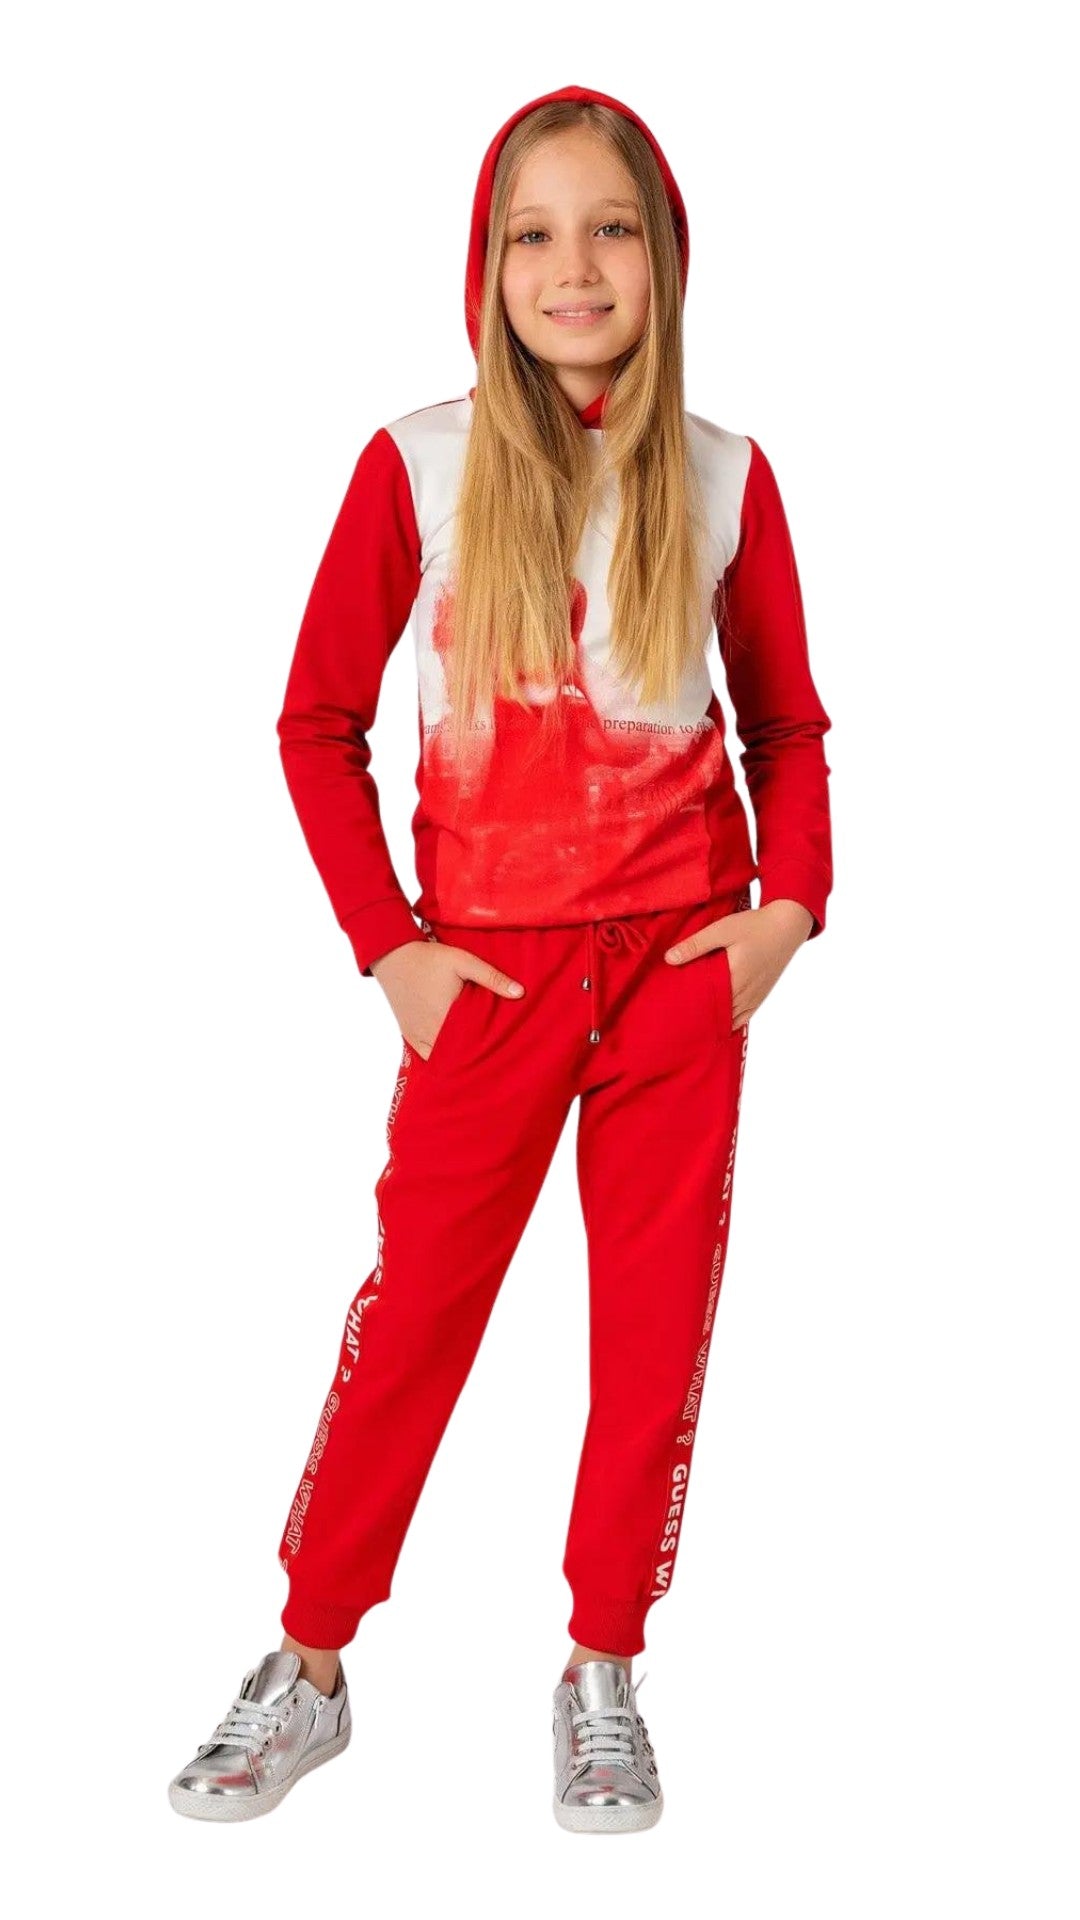 InCity Girls Tween 7-14 Years Regular Fit Red Casual Long Sleeve Comfy Printed Fairlop Hoodie Sweatshirt InCity Boys & Girls